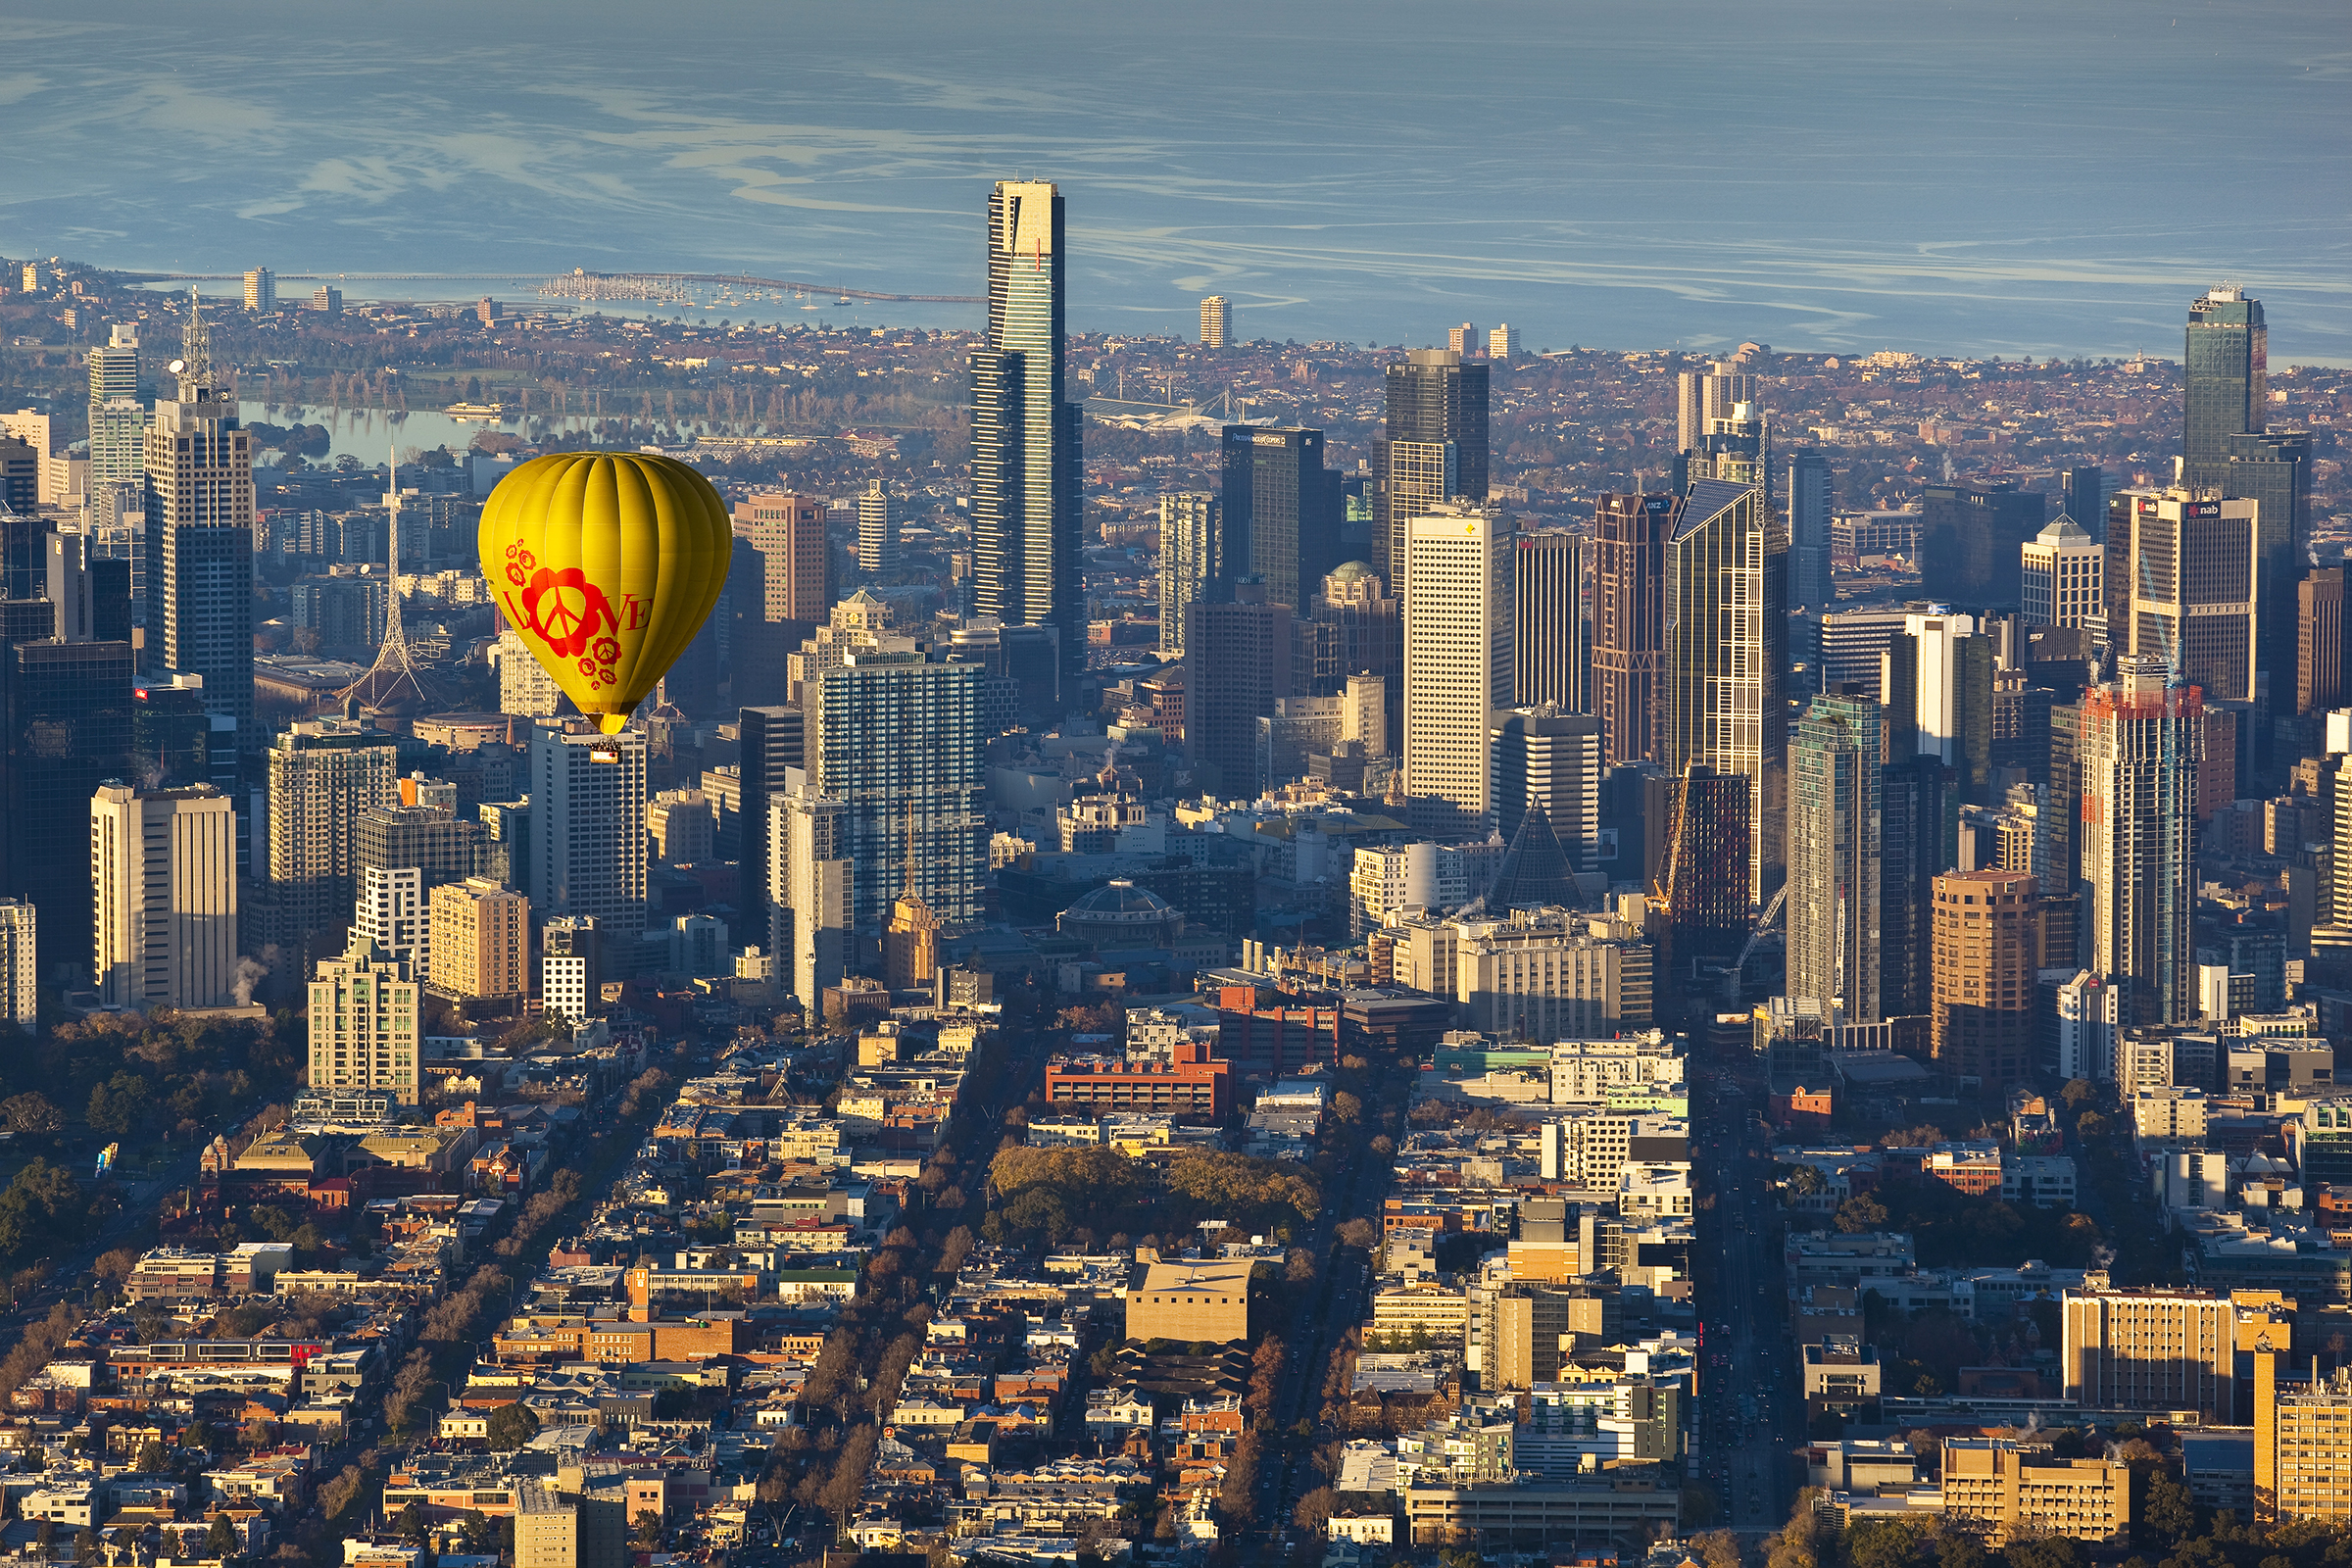 Melbourne hot air balloon ride